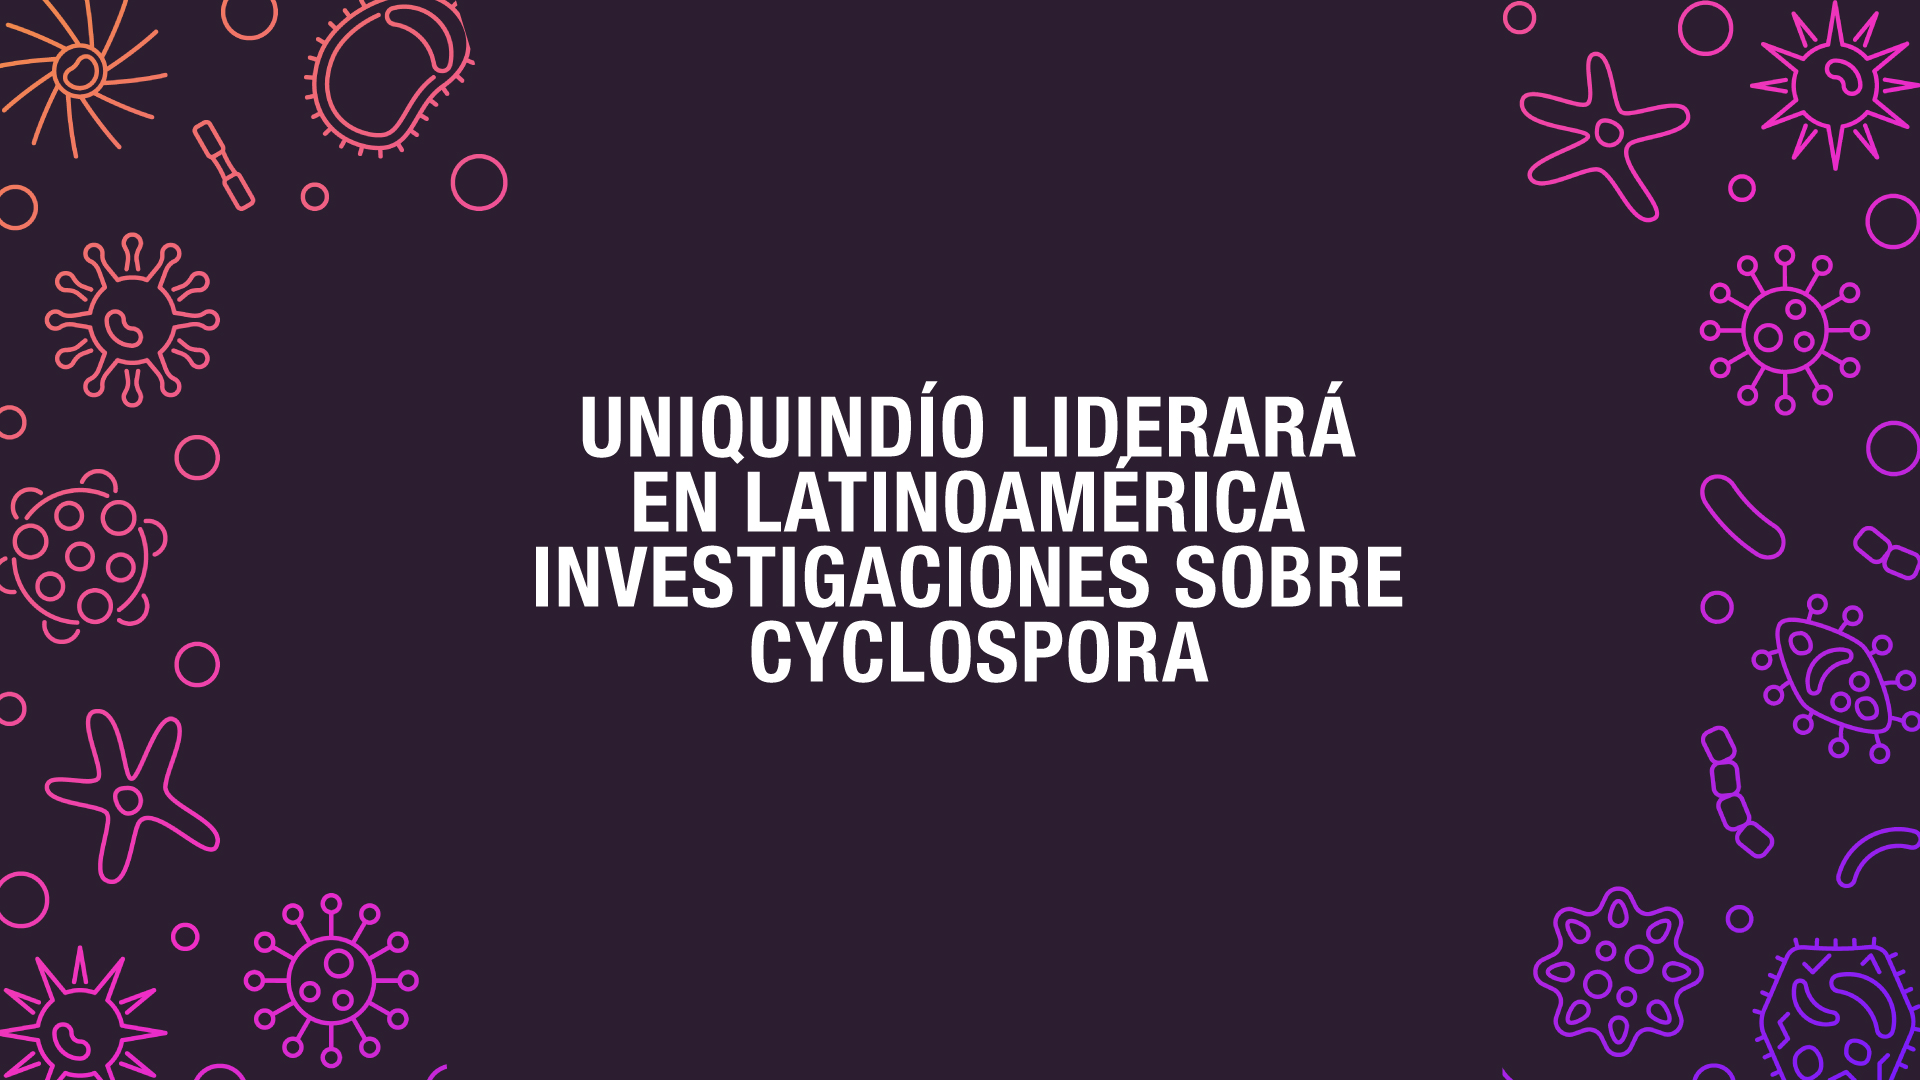 Cyclospora, una amenaza en Latinoamérica